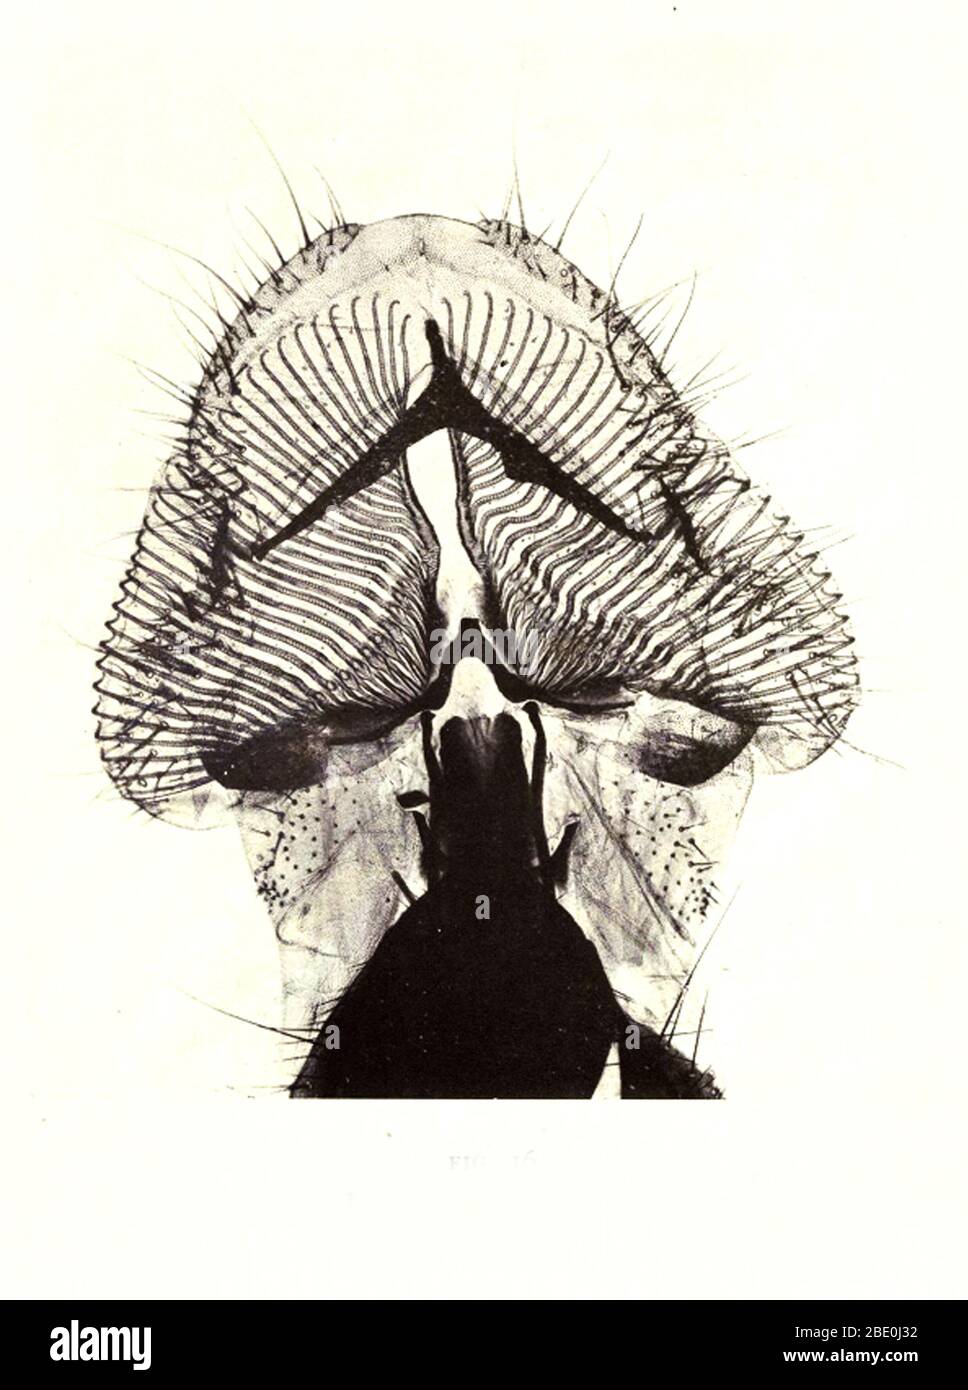 Probosci di colpo-mosca. Ingrandimento: 40x. Fotomicrografia realizzata da Arthur e Smith nei primi anni del 1900, utilizzando un microscopio e una macchina fotografica combinati. Nel 1904, la Royal Society di Londra espone al pubblico una serie di fotomicrografie di Smith. Sono stati successivamente pubblicati nel 1909 in un libro intitolato 'natura attraverso microscopio & fotocamera.' Sono stati i primi esempi di fotomicroscopia che molti avevano mai visto. Foto Stock